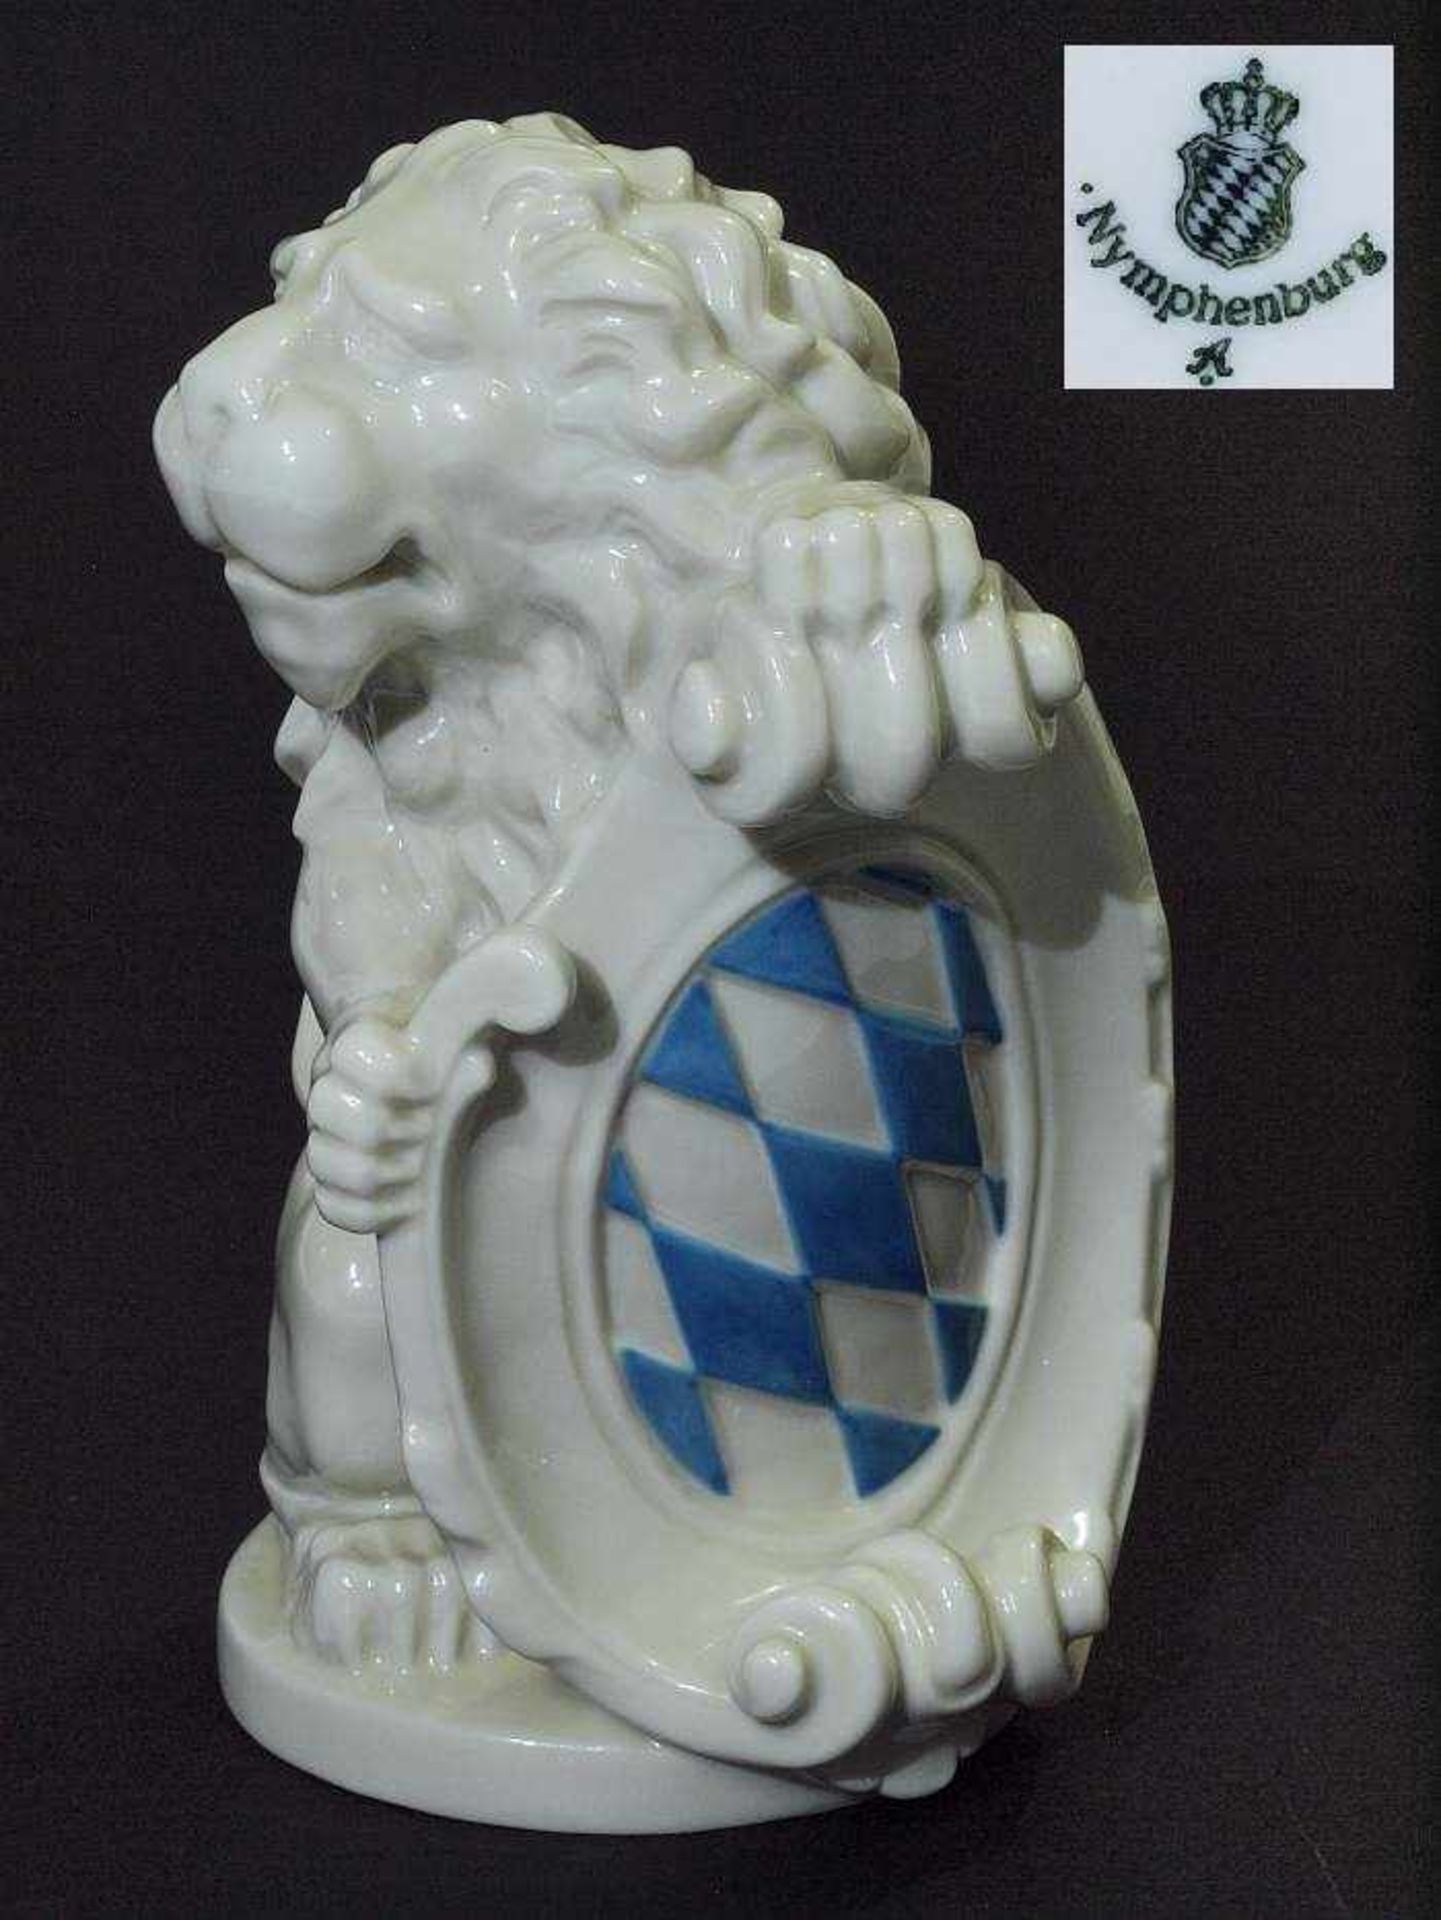 Großer Löwe mit Wappen. Großer Löwe mit Wappen. NYMPHENBURG, Marke 1976 - 1997. Entwurf nach R. Boos